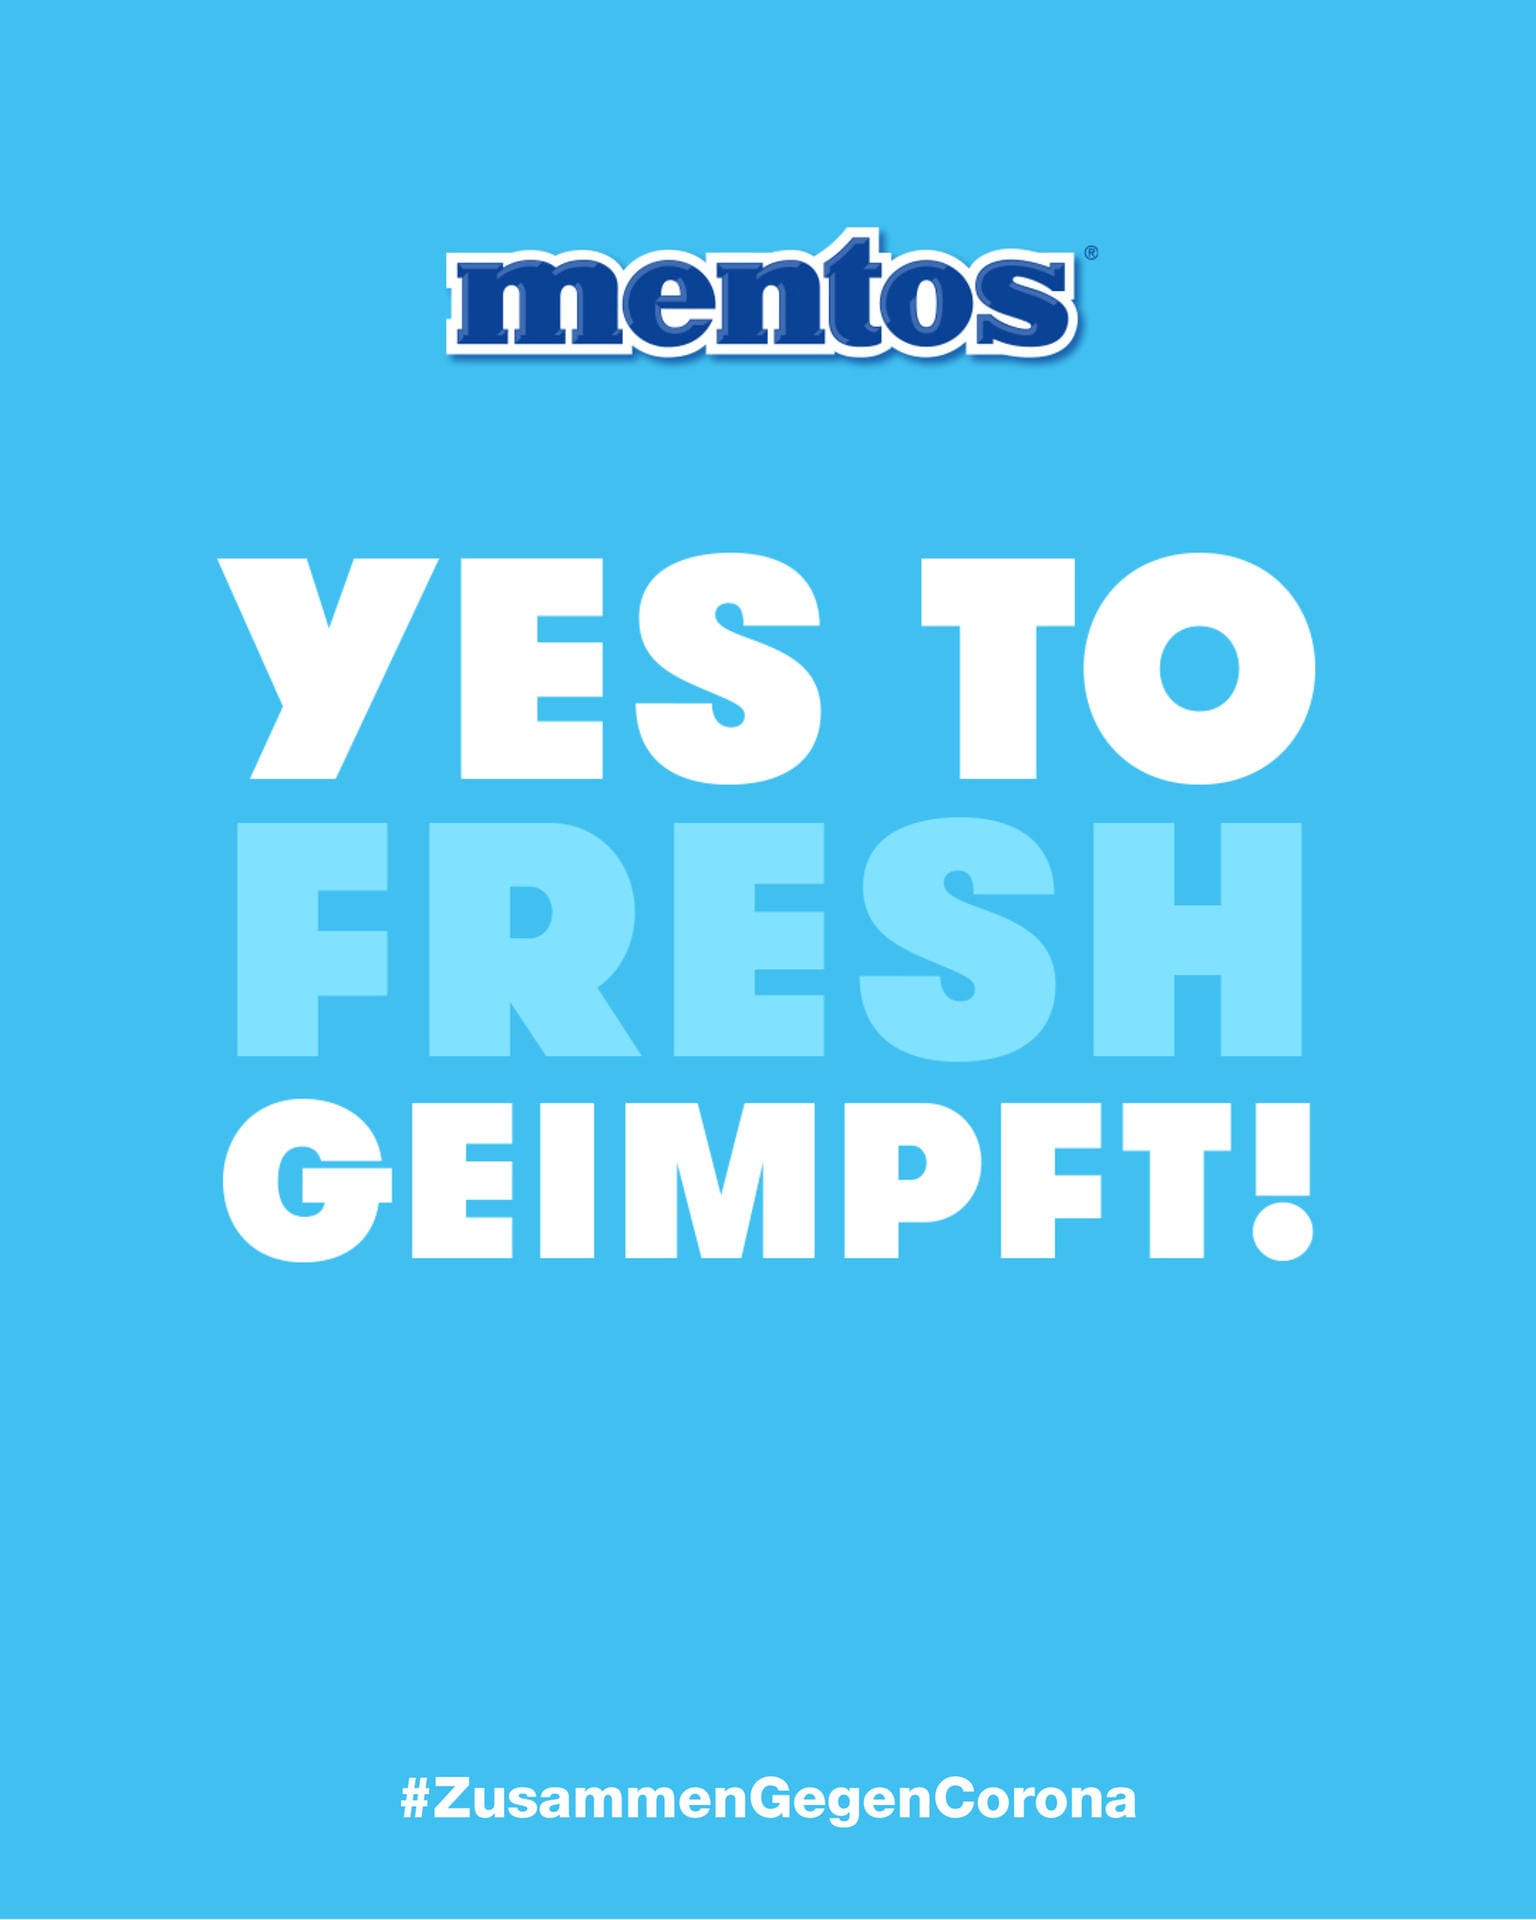 Mentos mag es frisch: "Yes to fresh geimpft!".